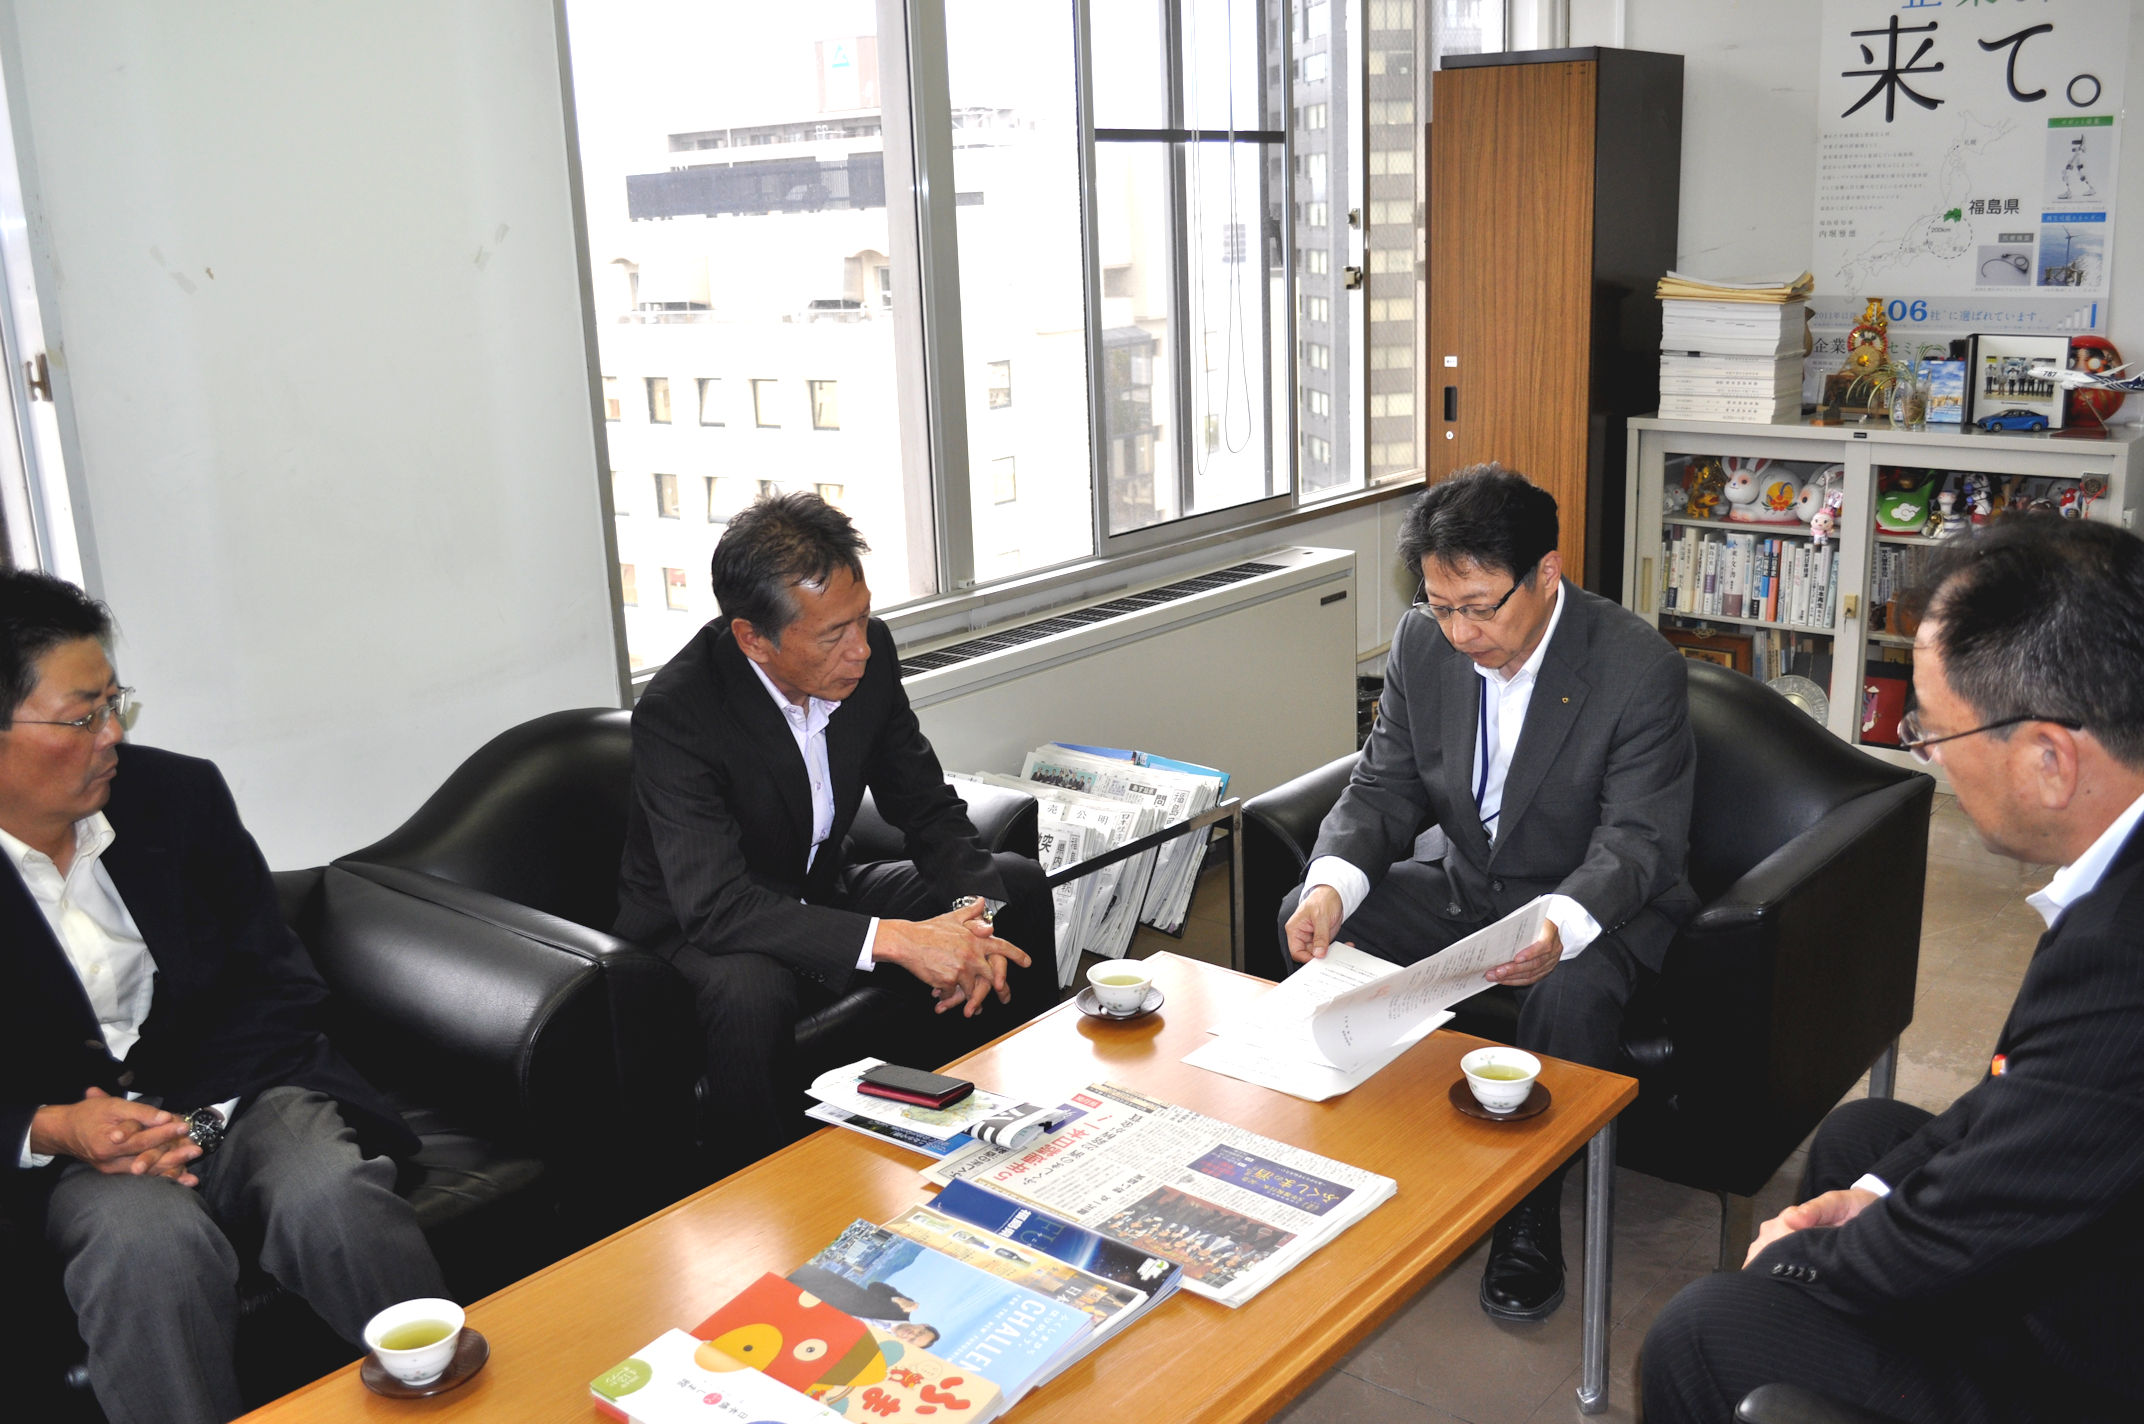 懇談の中で飯塚商工労働部長は、長時間労働の是正に取り組む姿勢を示しました